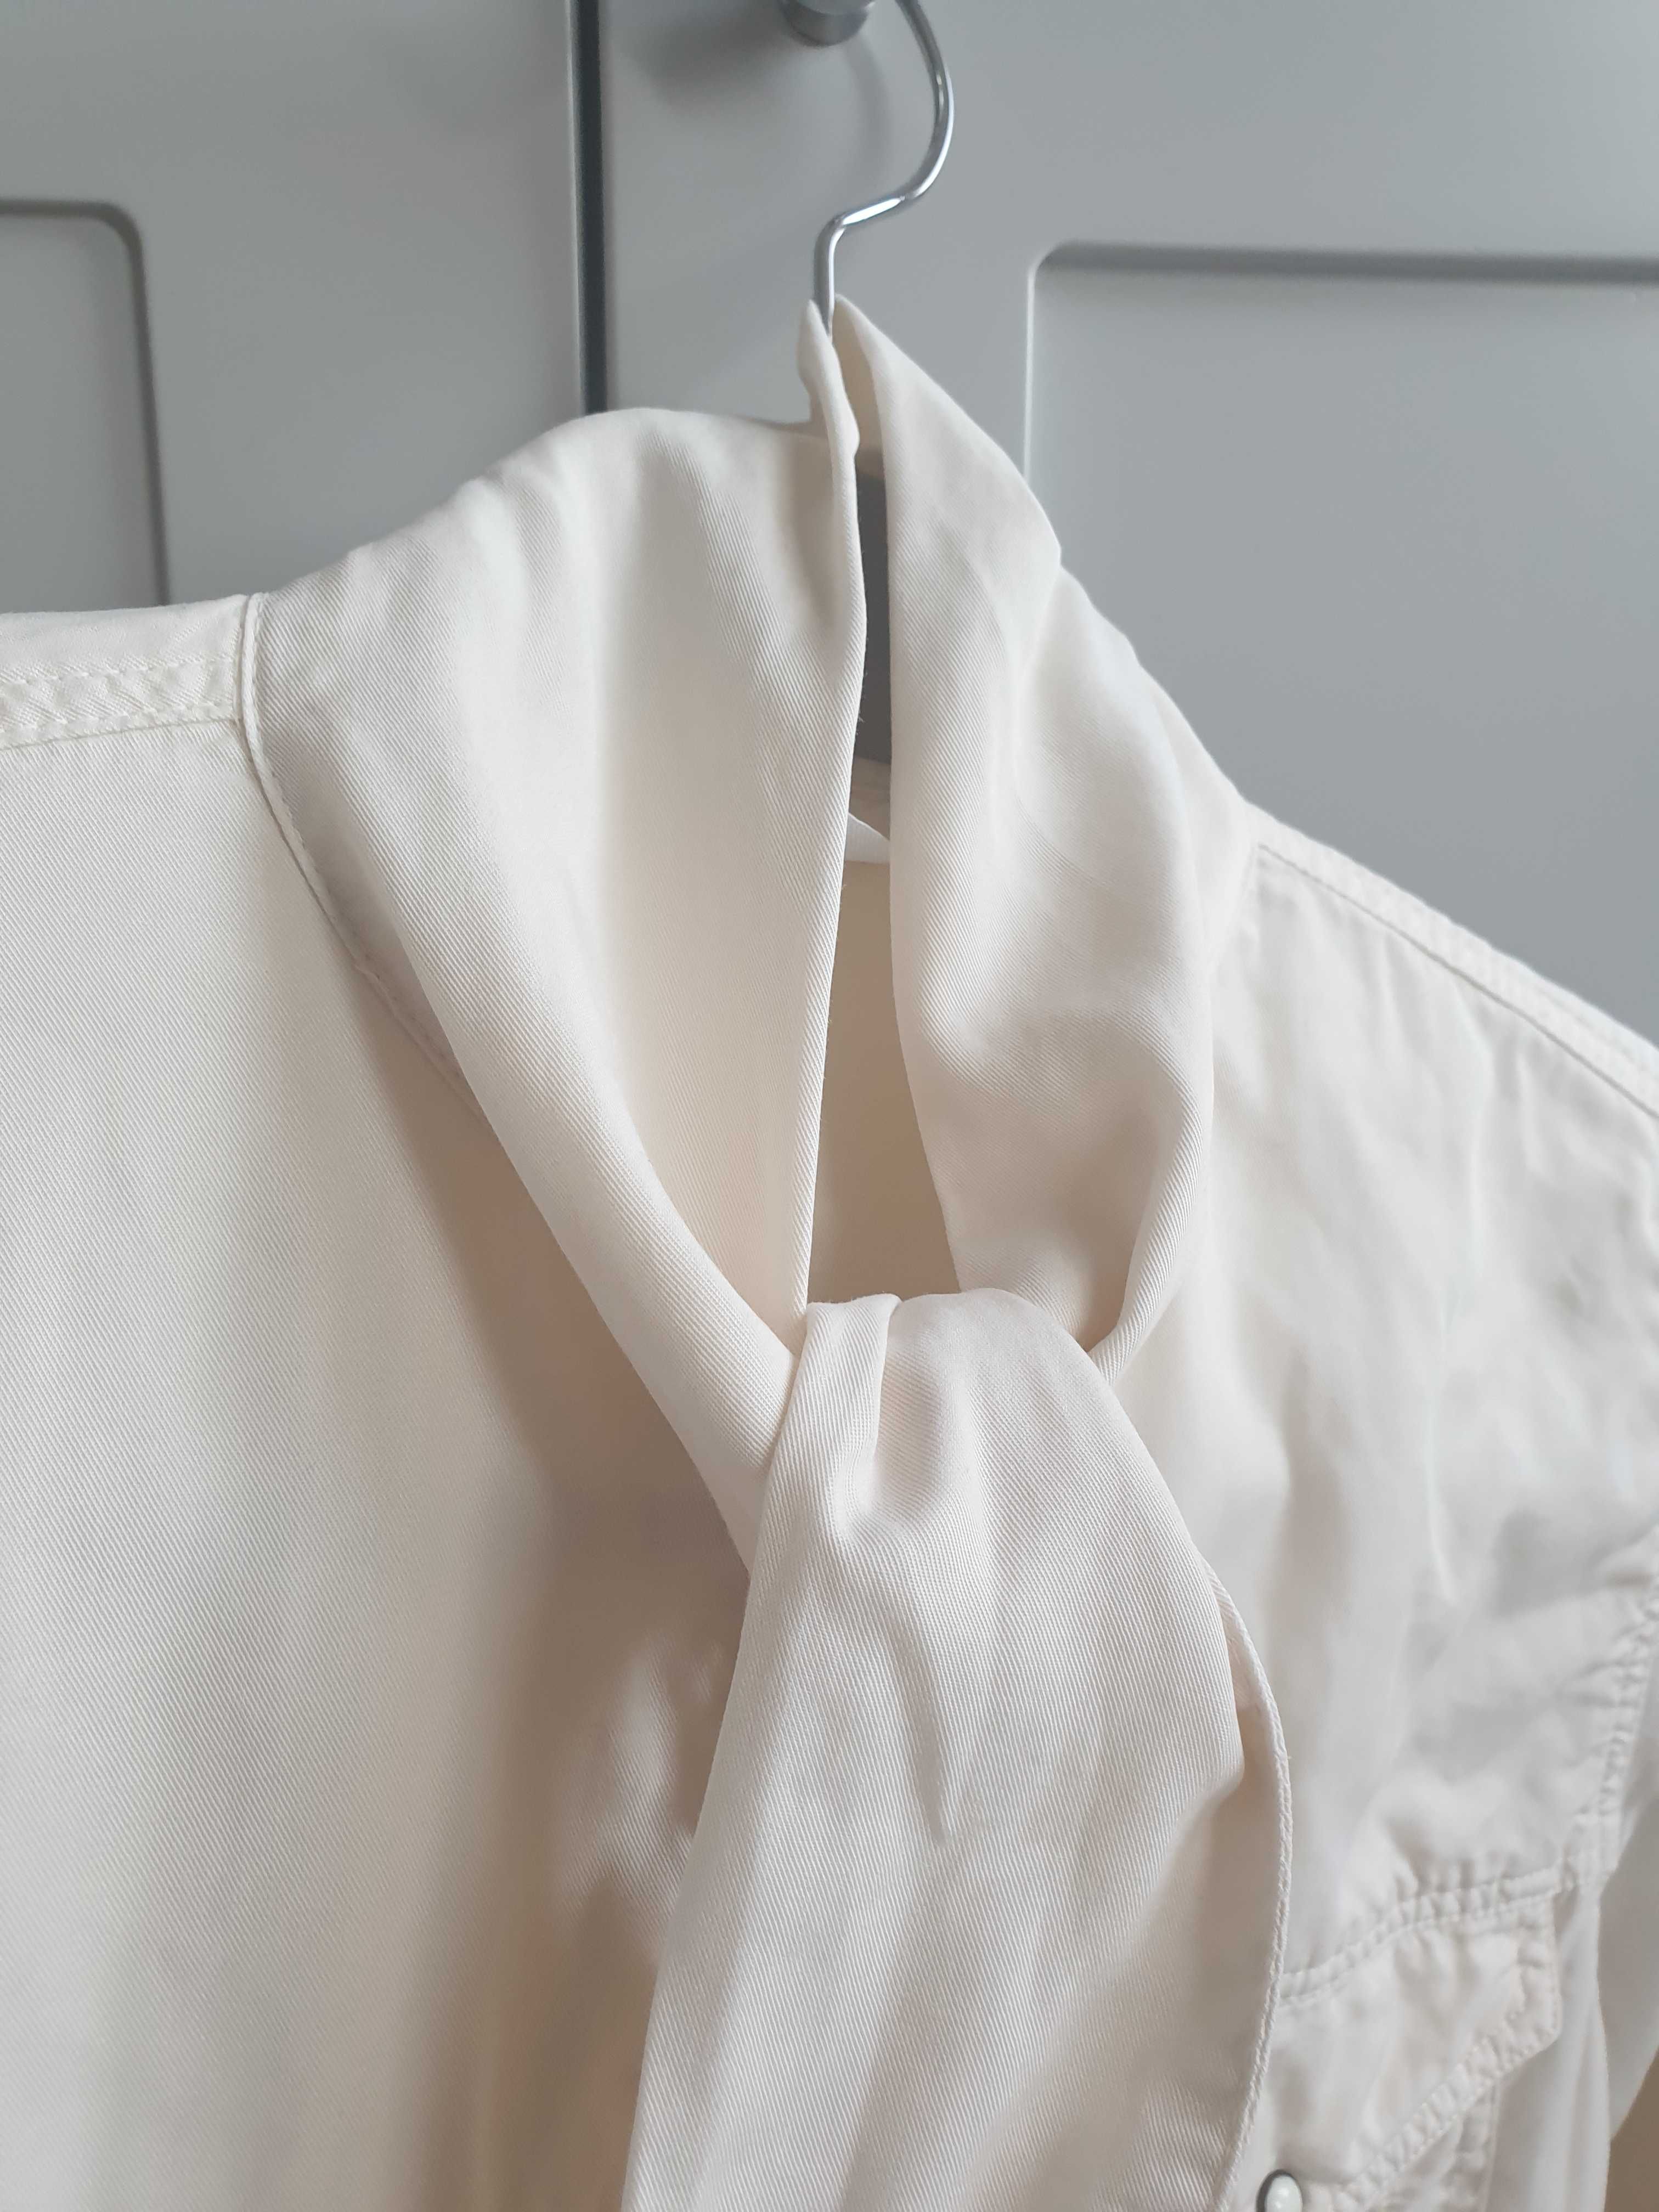 Beżowa koszula wiązana pod szyją na zatrzaski Zara 36 38 S z tencelu